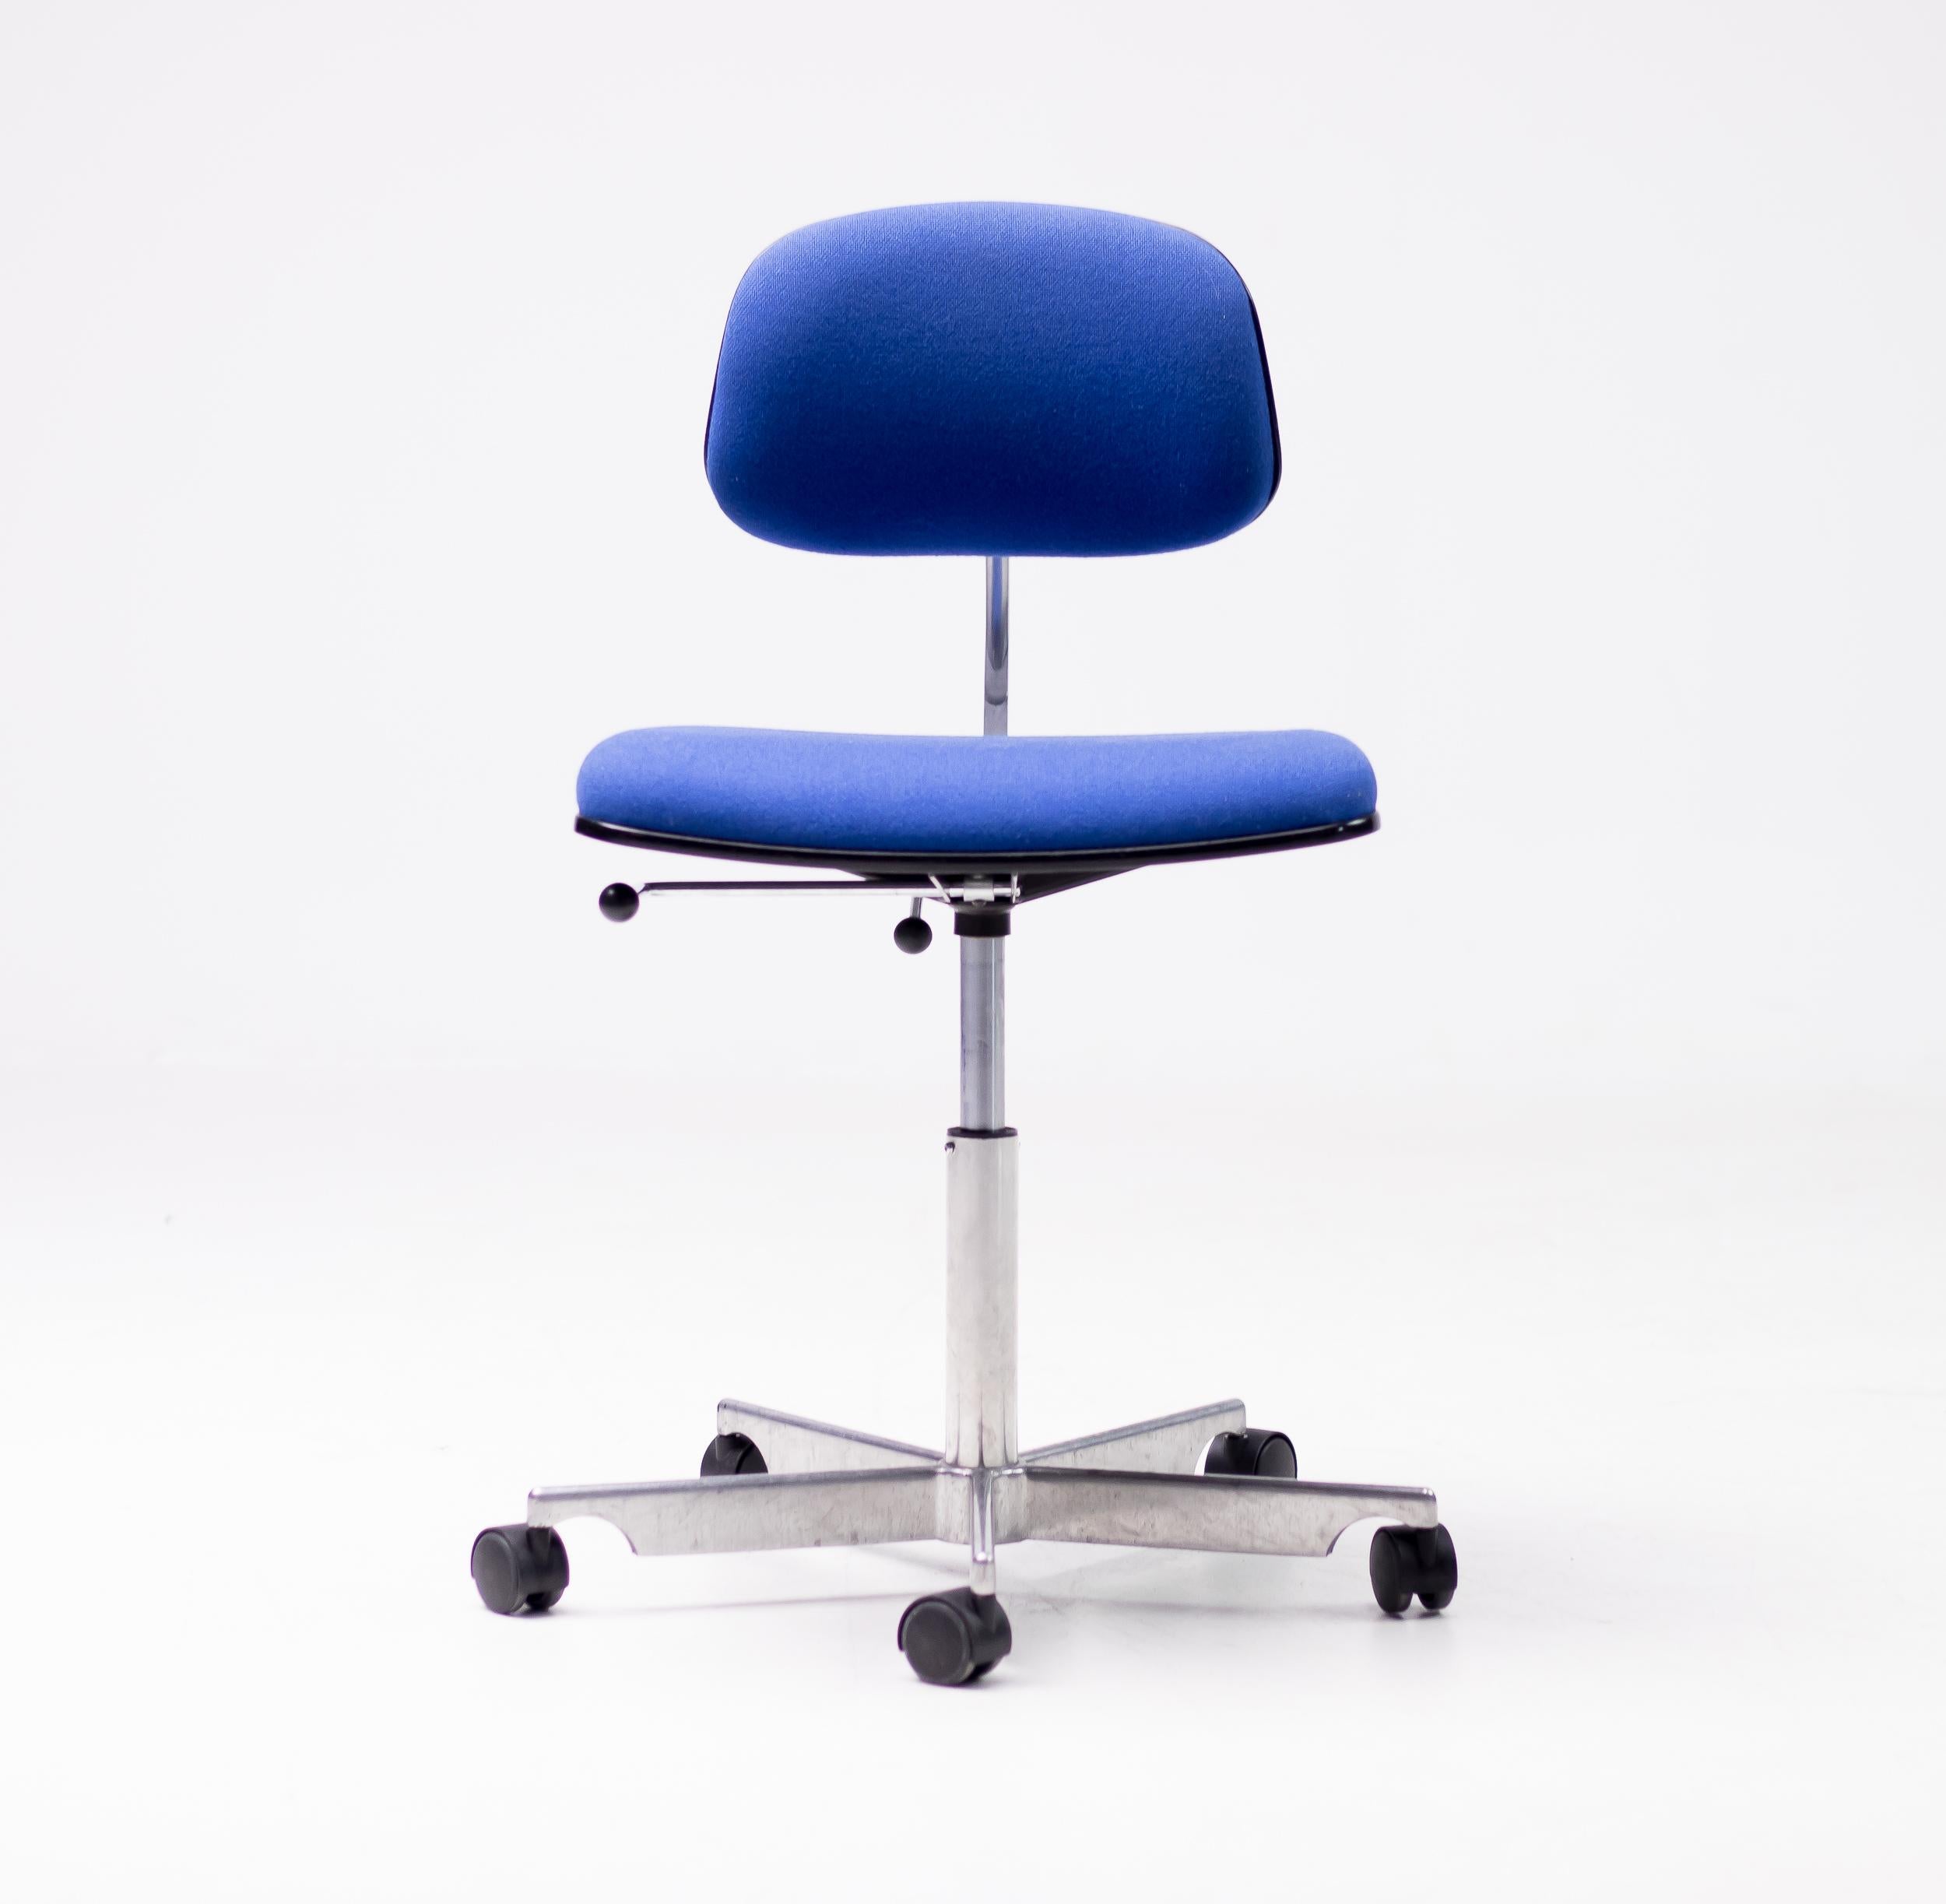 Der Kevi-Arbeitsstuhl ist eine Design-Ikone und bietet eine verstellbare Höhe, einen verstellbaren Rückenwinkel und eine verstellbare Sitzhöhe. Der überraschend bequeme Stuhl Kevi ist bei Architekten und Designern wegen seiner robusten Konstruktion,